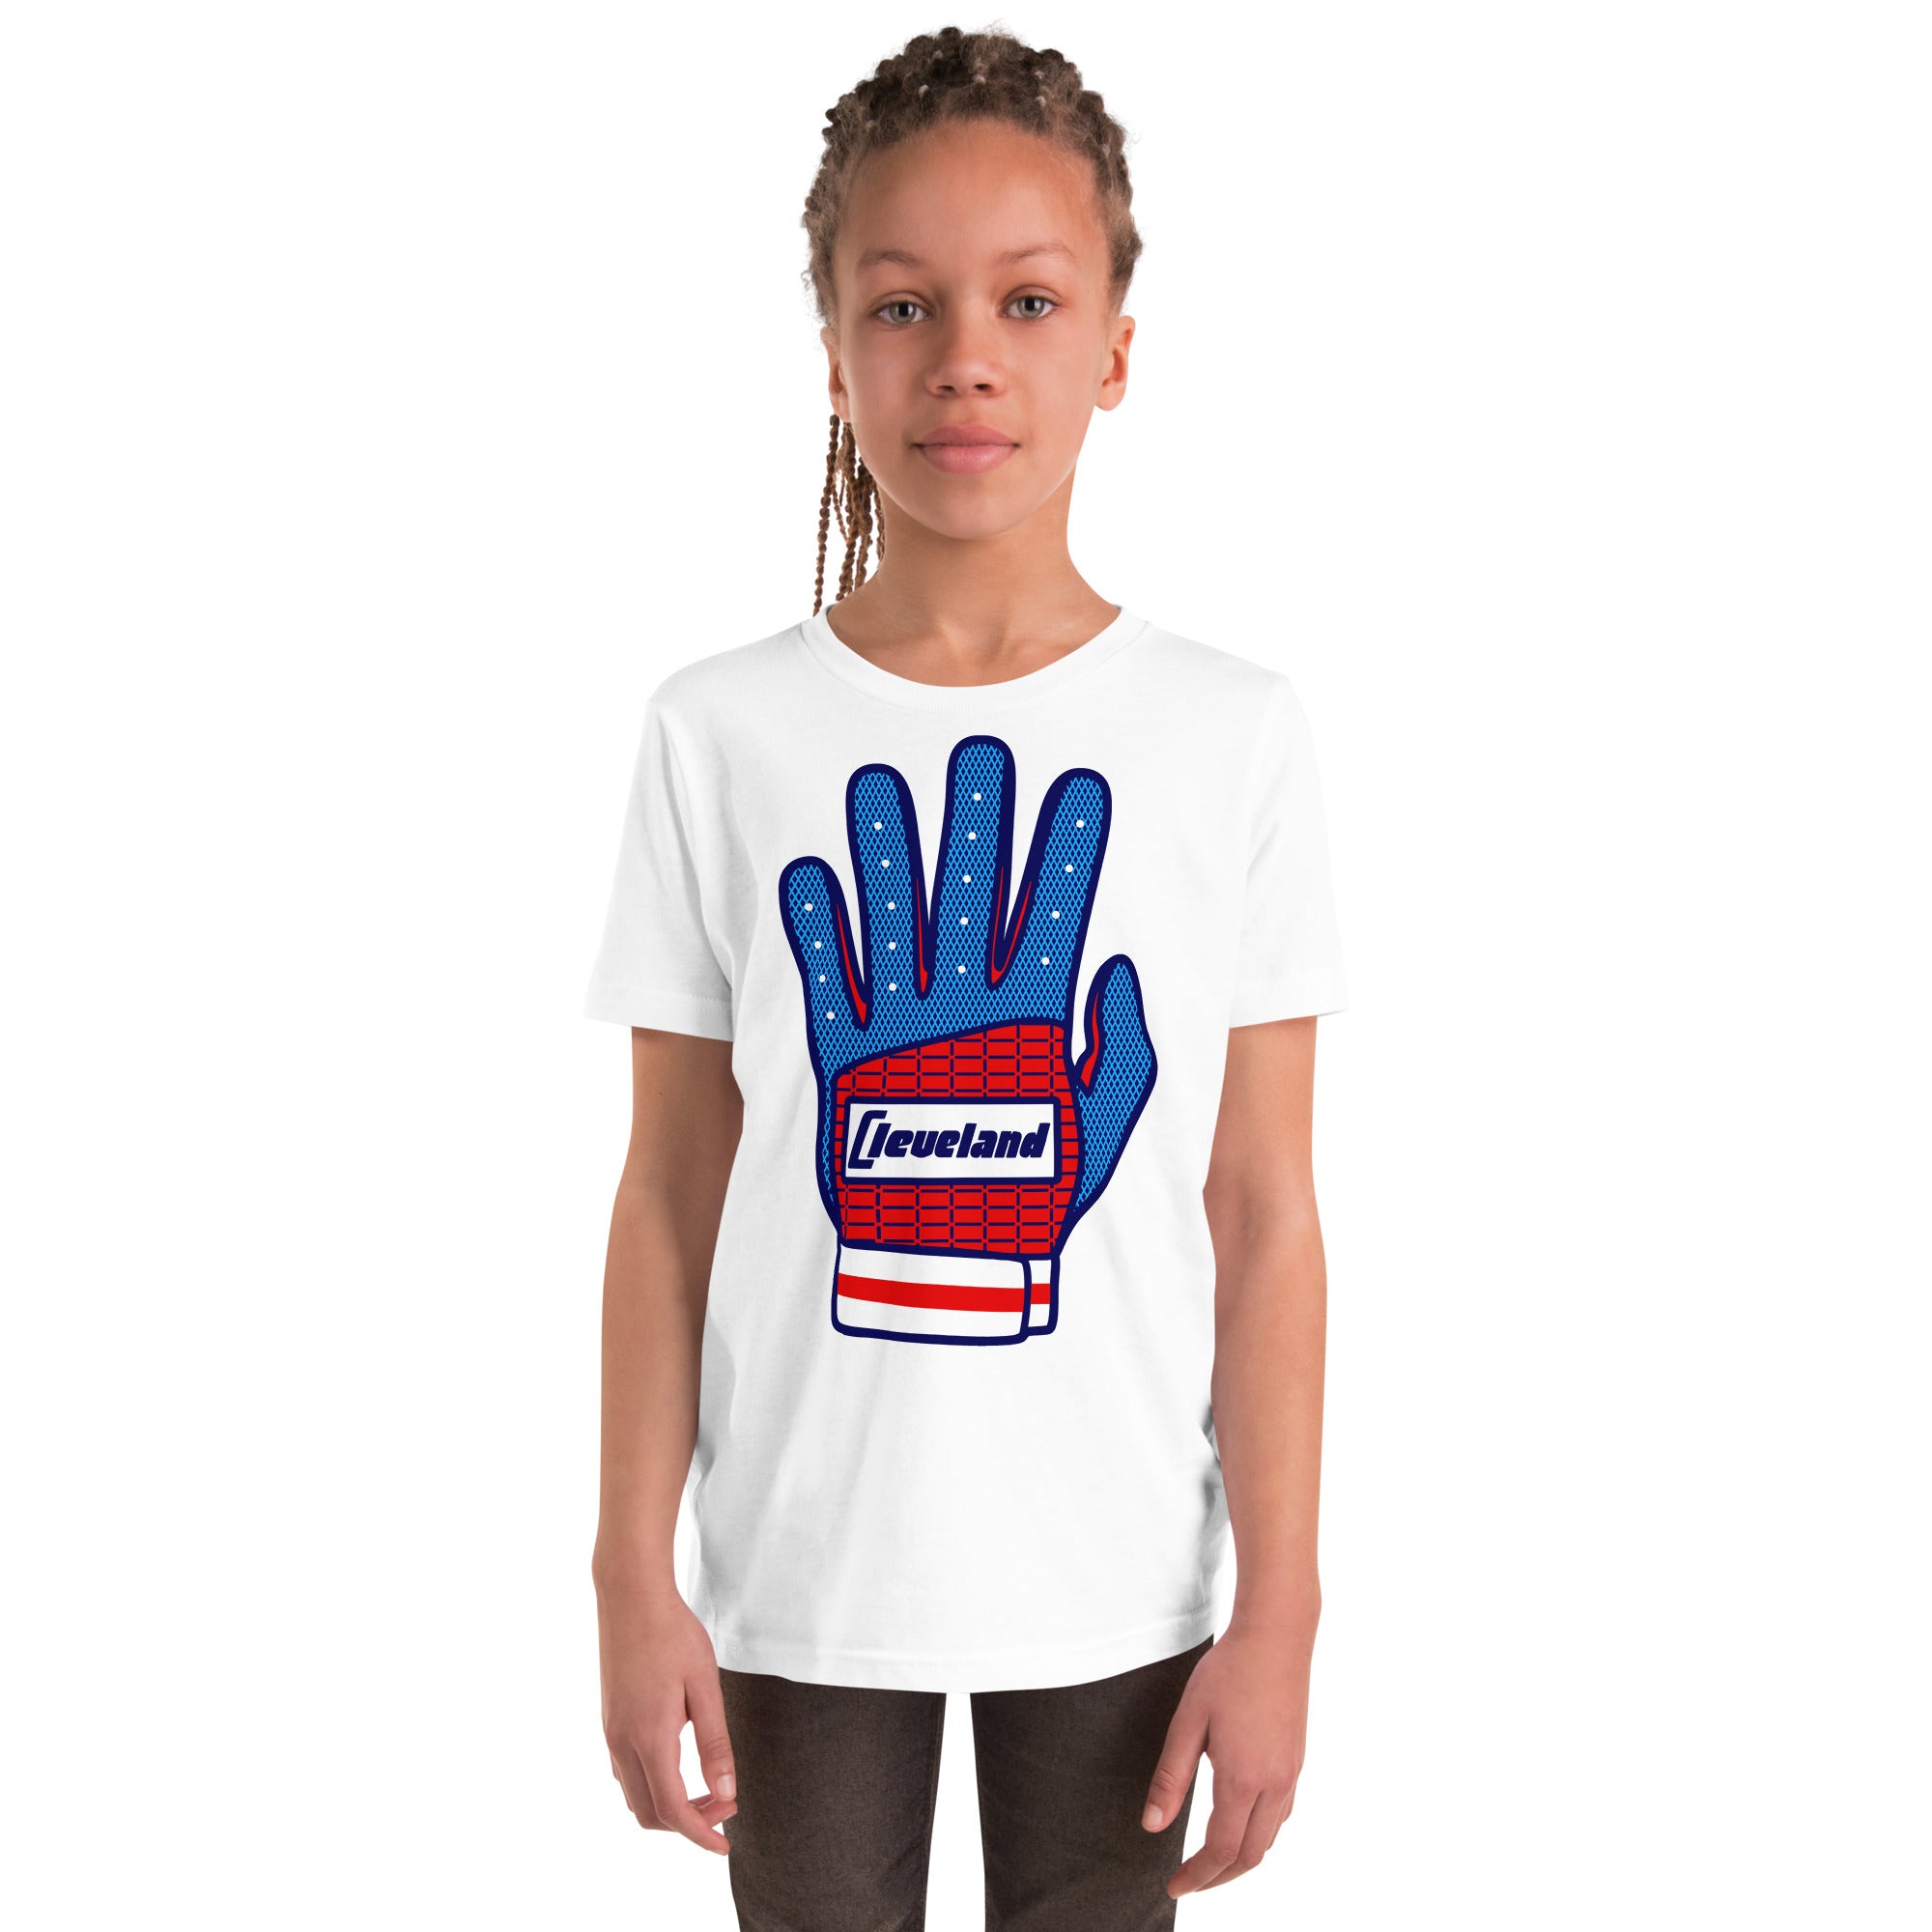 Batting Glove - Youth T-Shirt, T-shirts, WeBleedOhio, WeBleedOhio